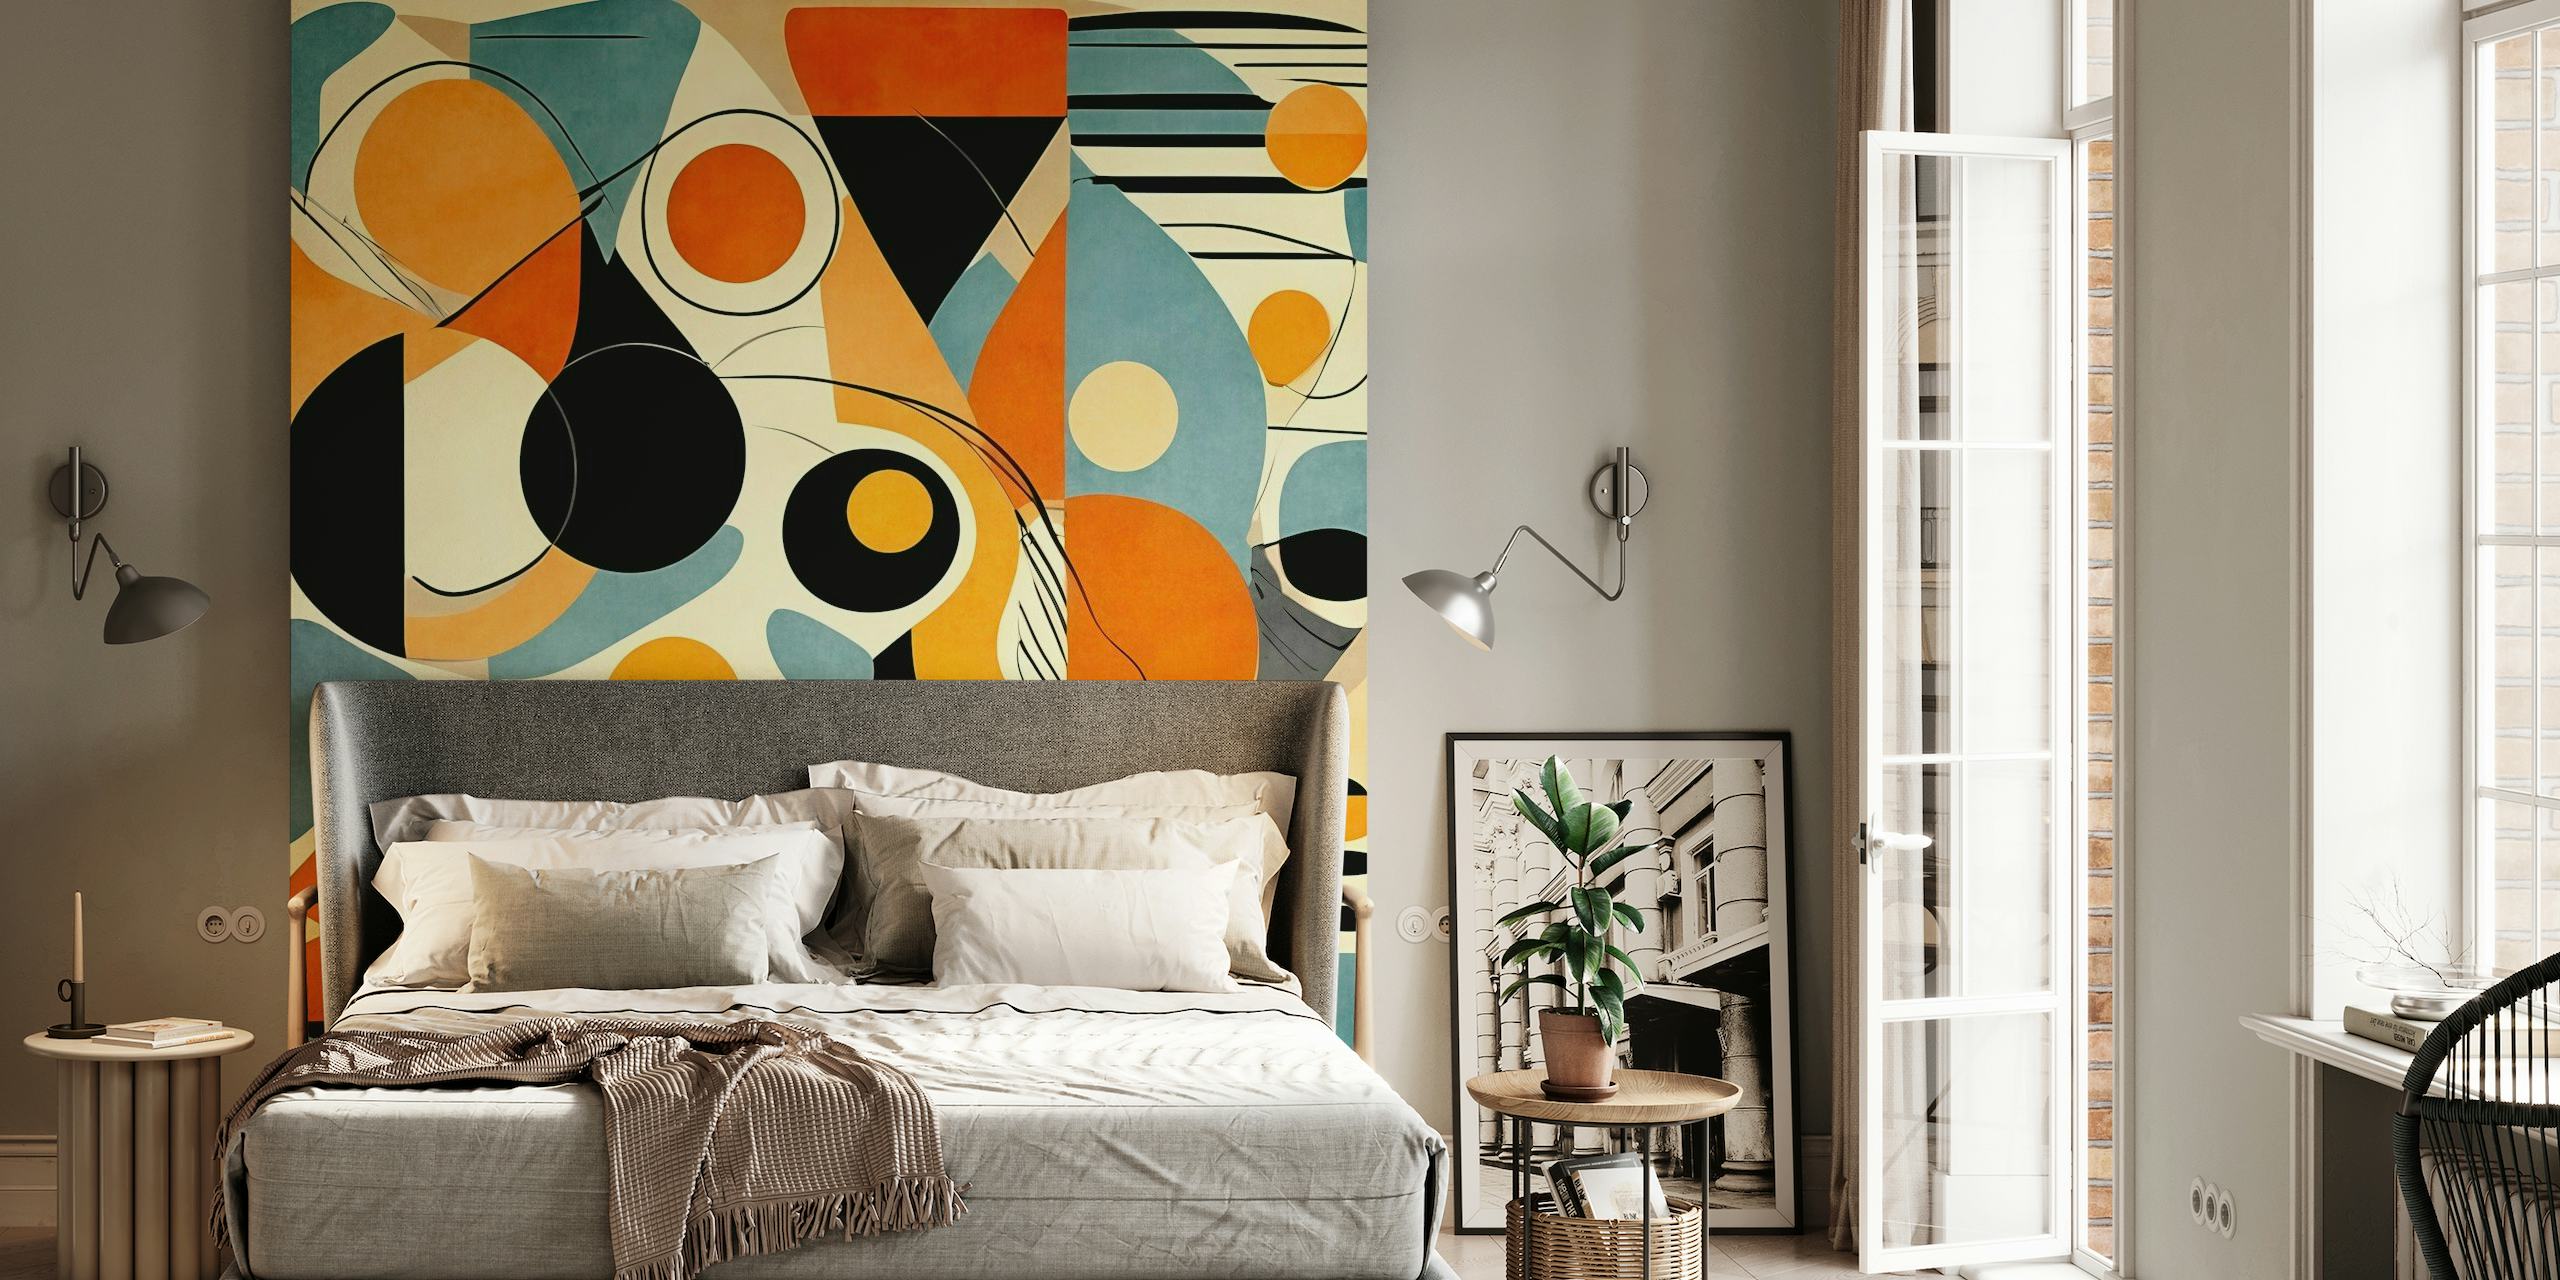 Abstrakt geometrisk vægmaleri med en blanding af orange, blå, sorte og cremefarver